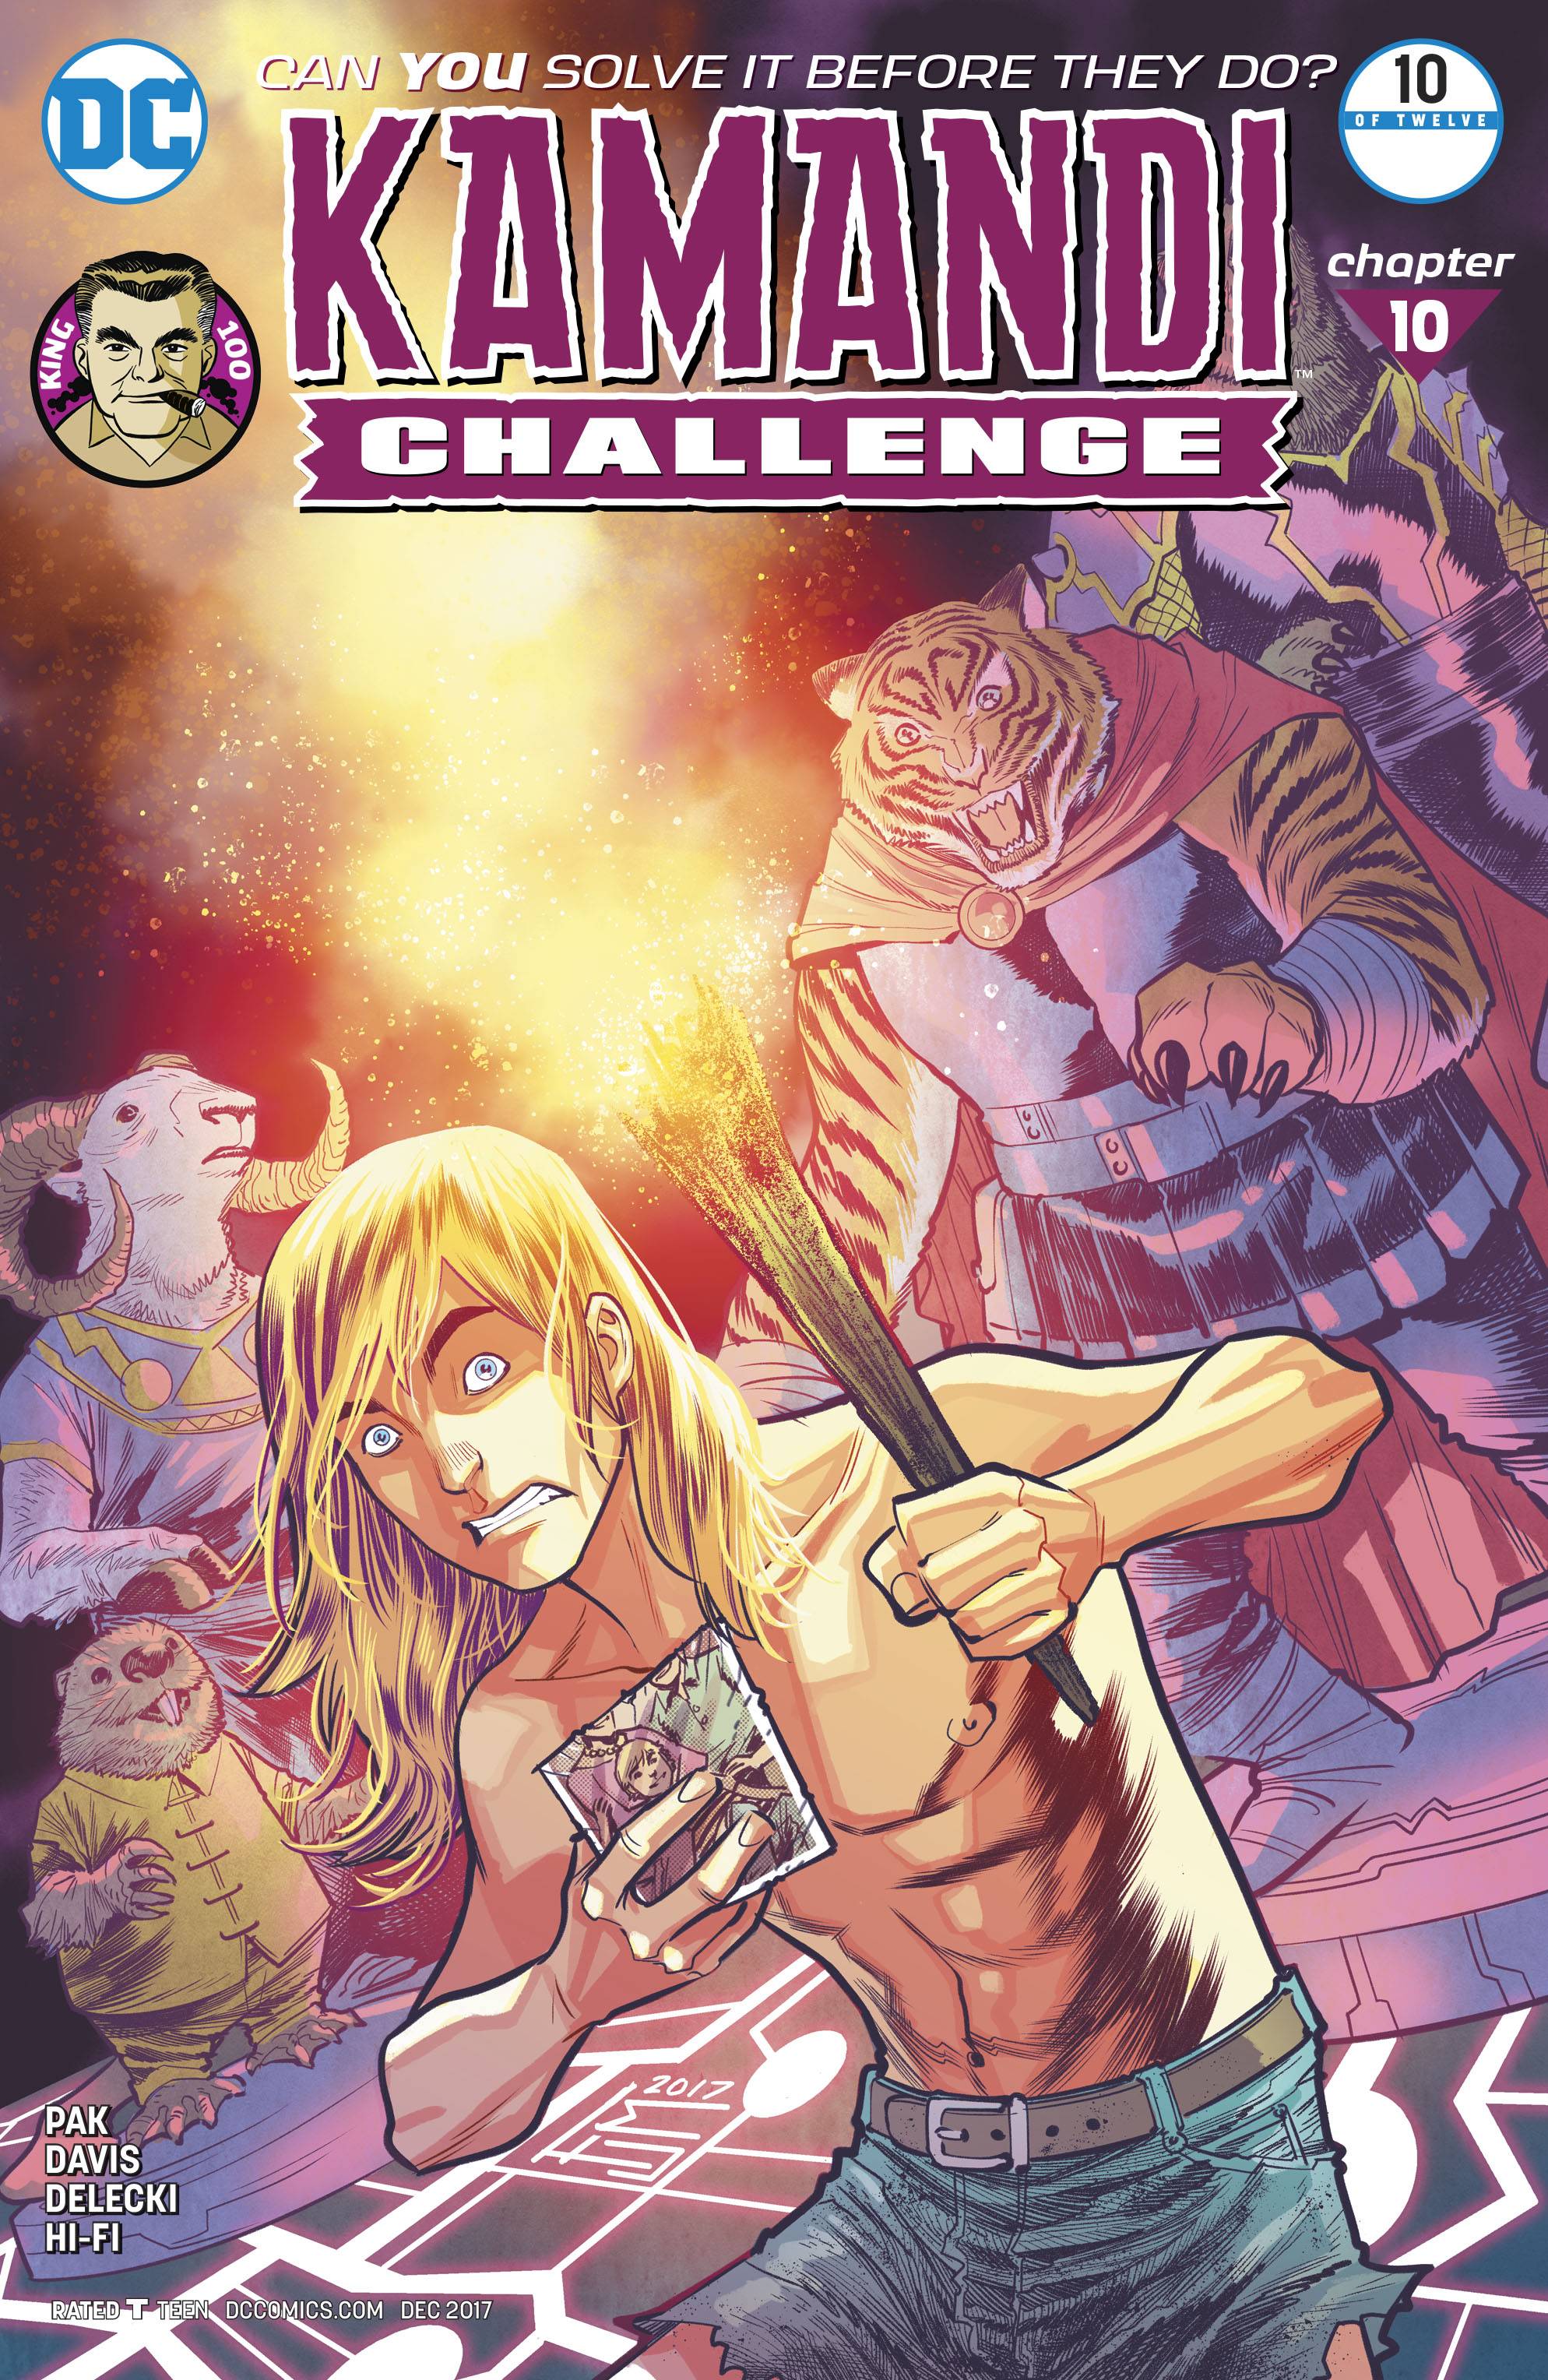 Kamandi Challenge 10 Comic Book NM